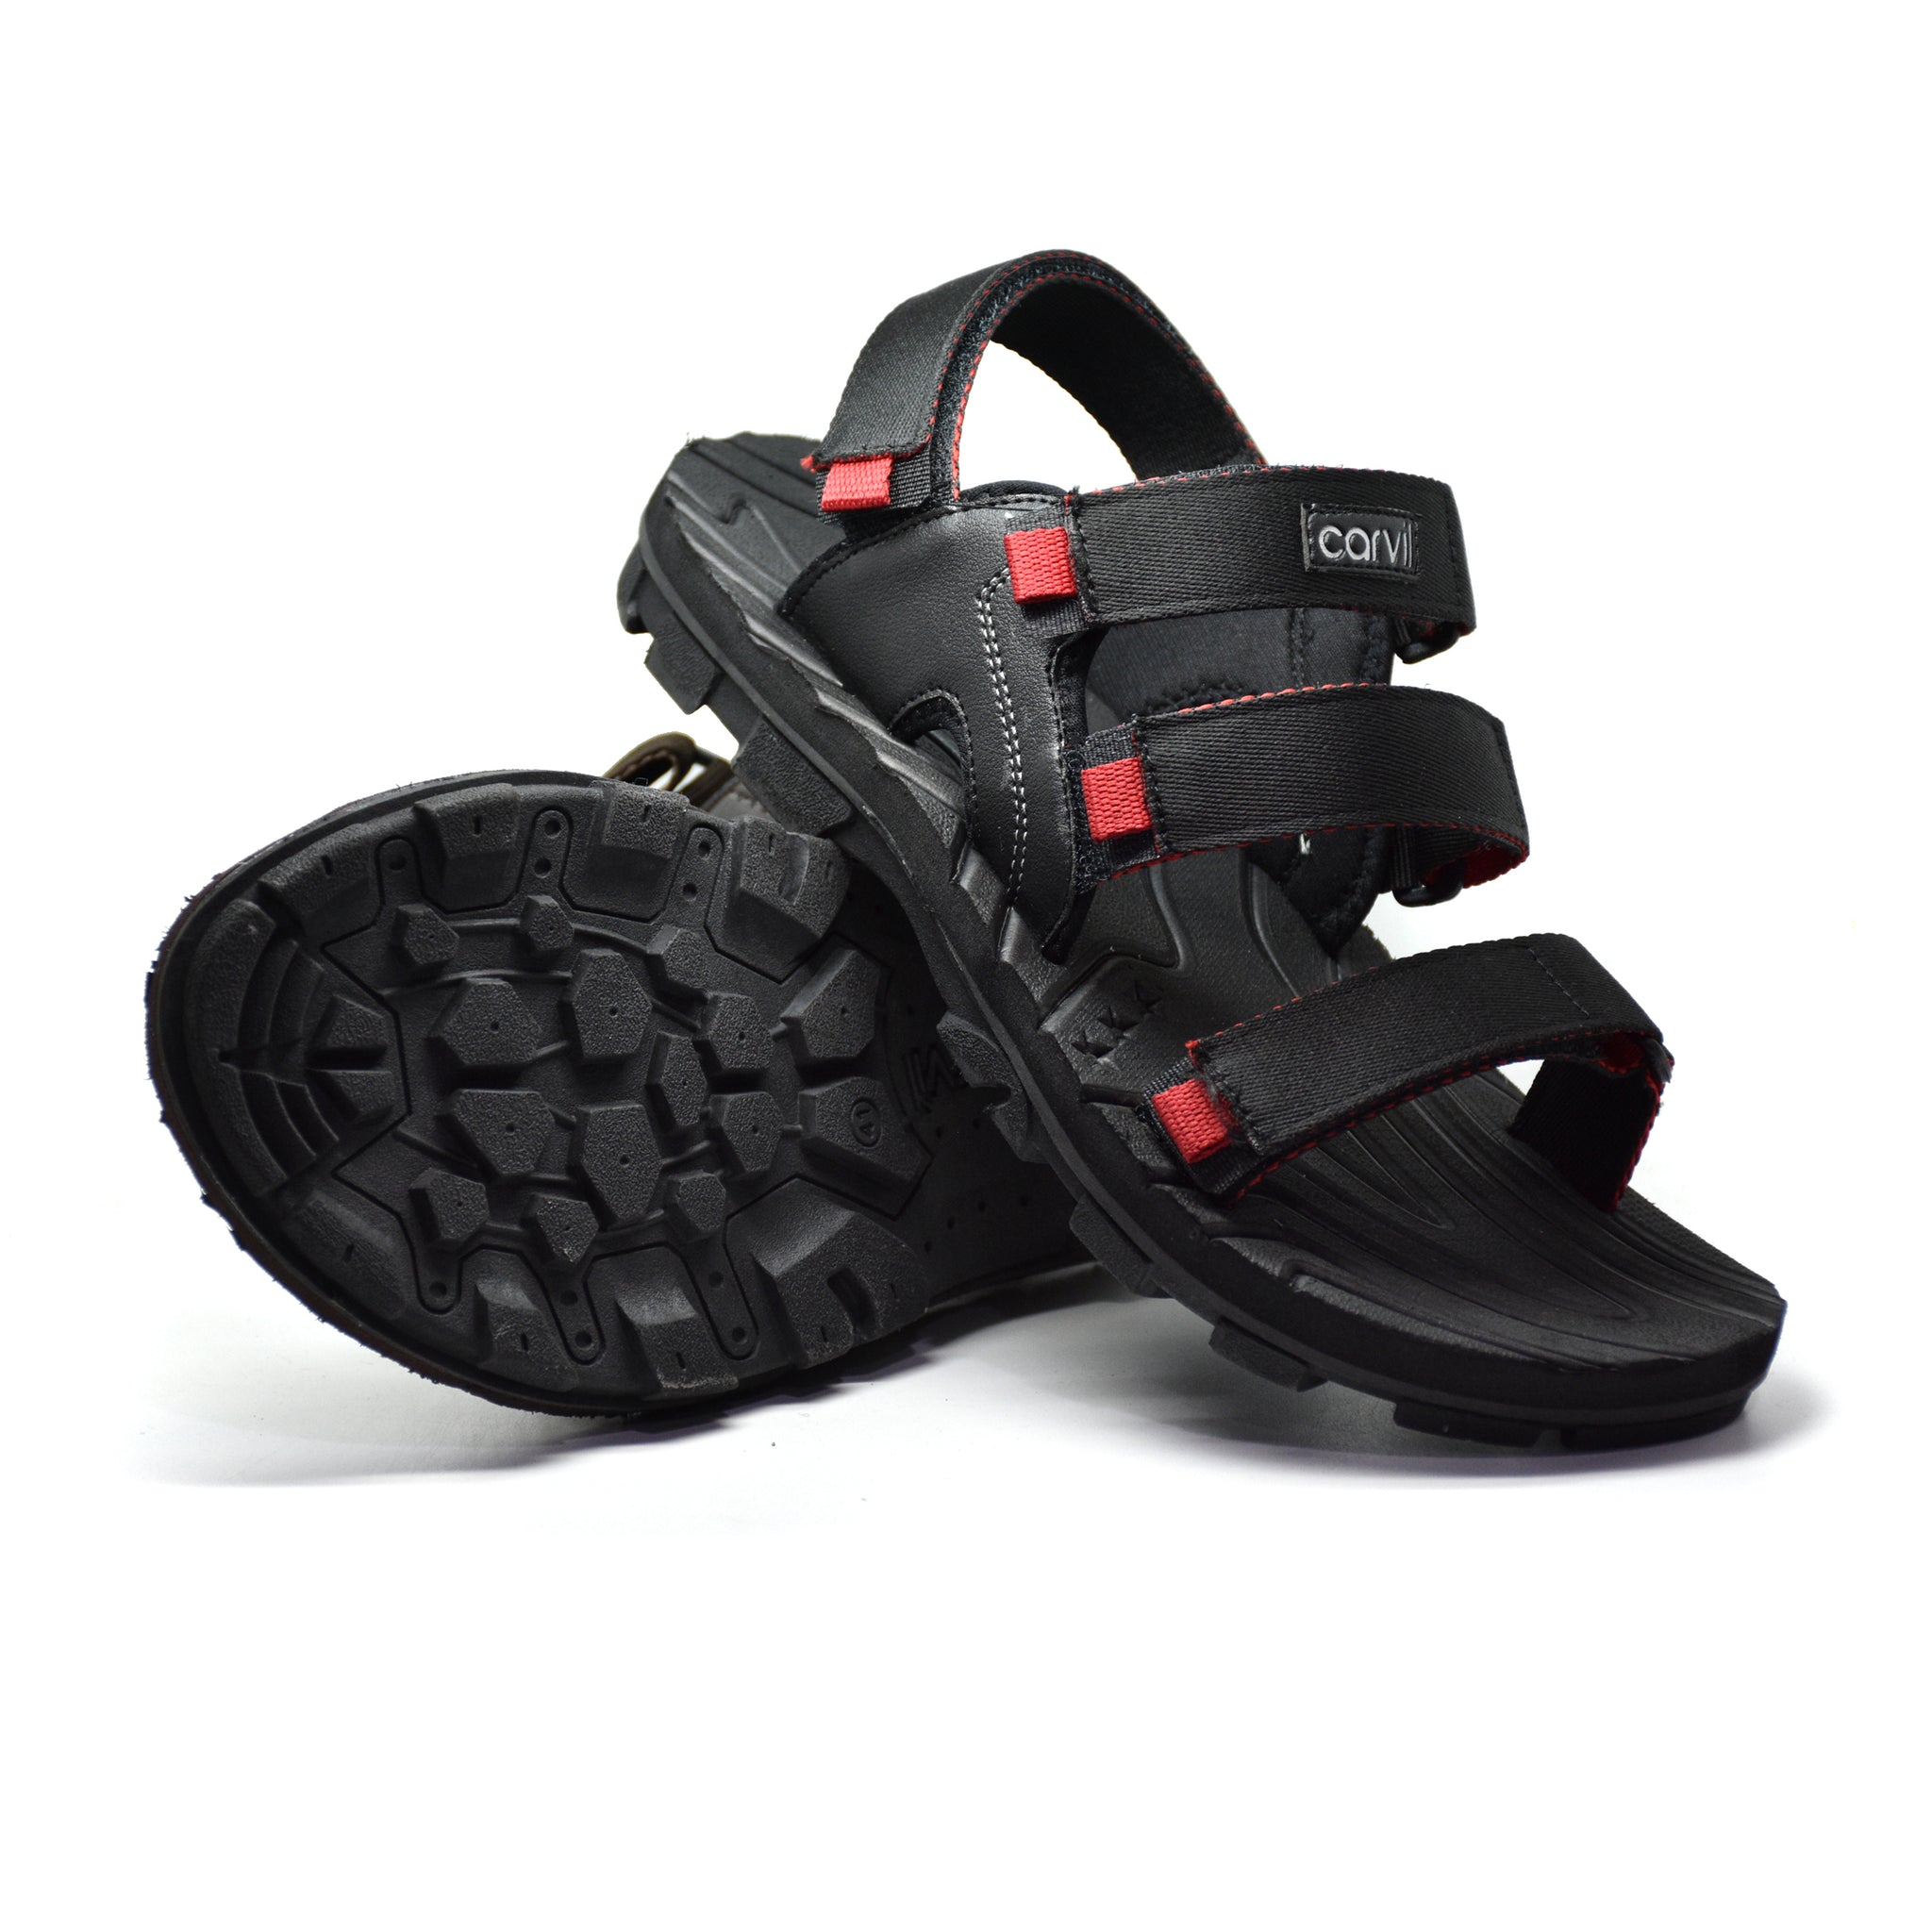 Carvil Sandal Pria SAPPORO-GM BLACK/RED